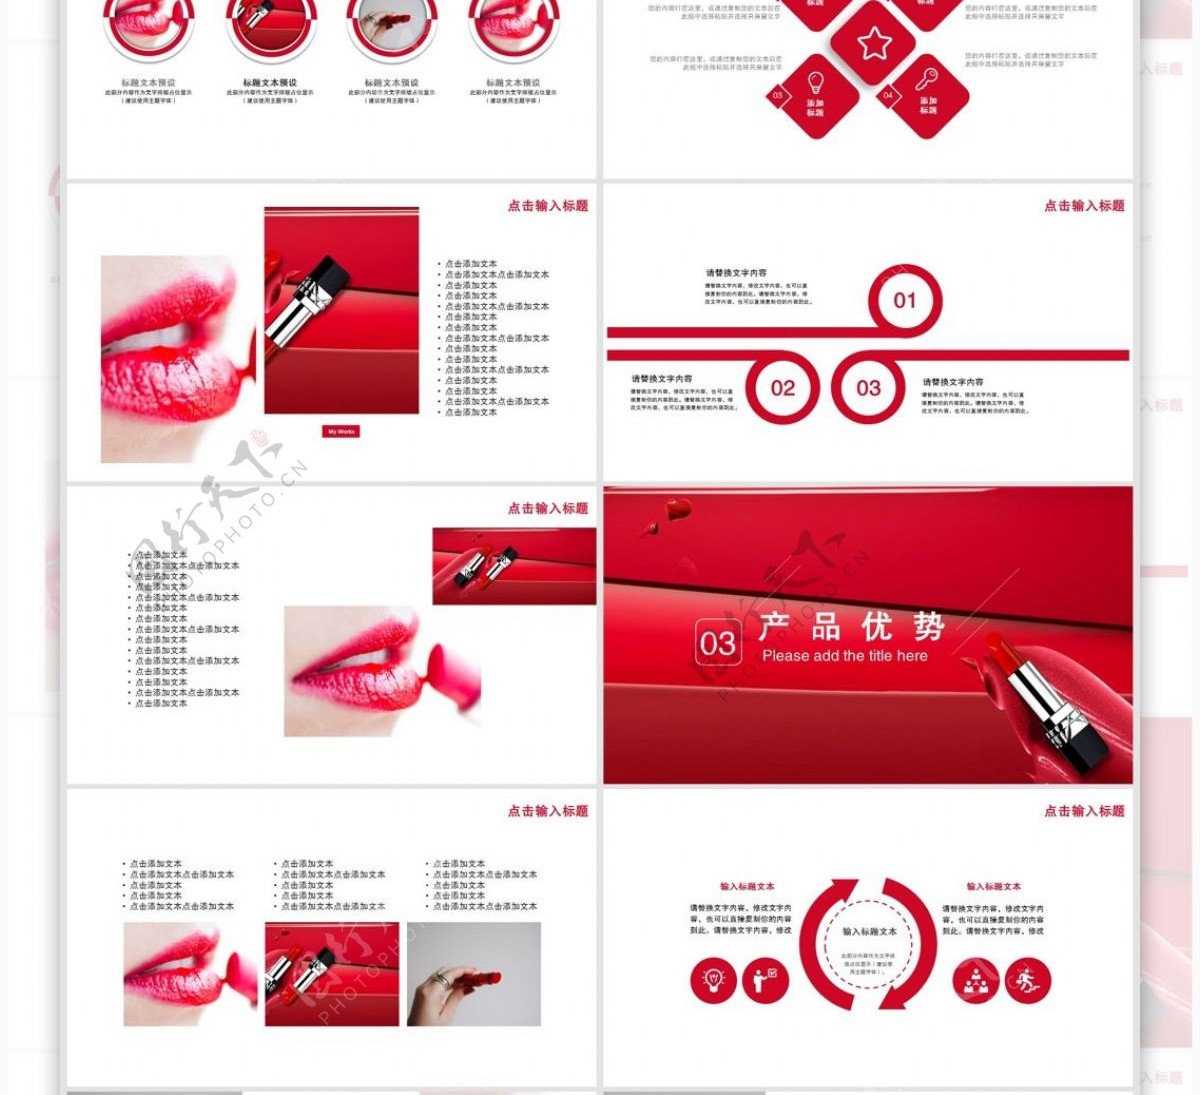 26创意彩妆新品发布宣传PPT模板